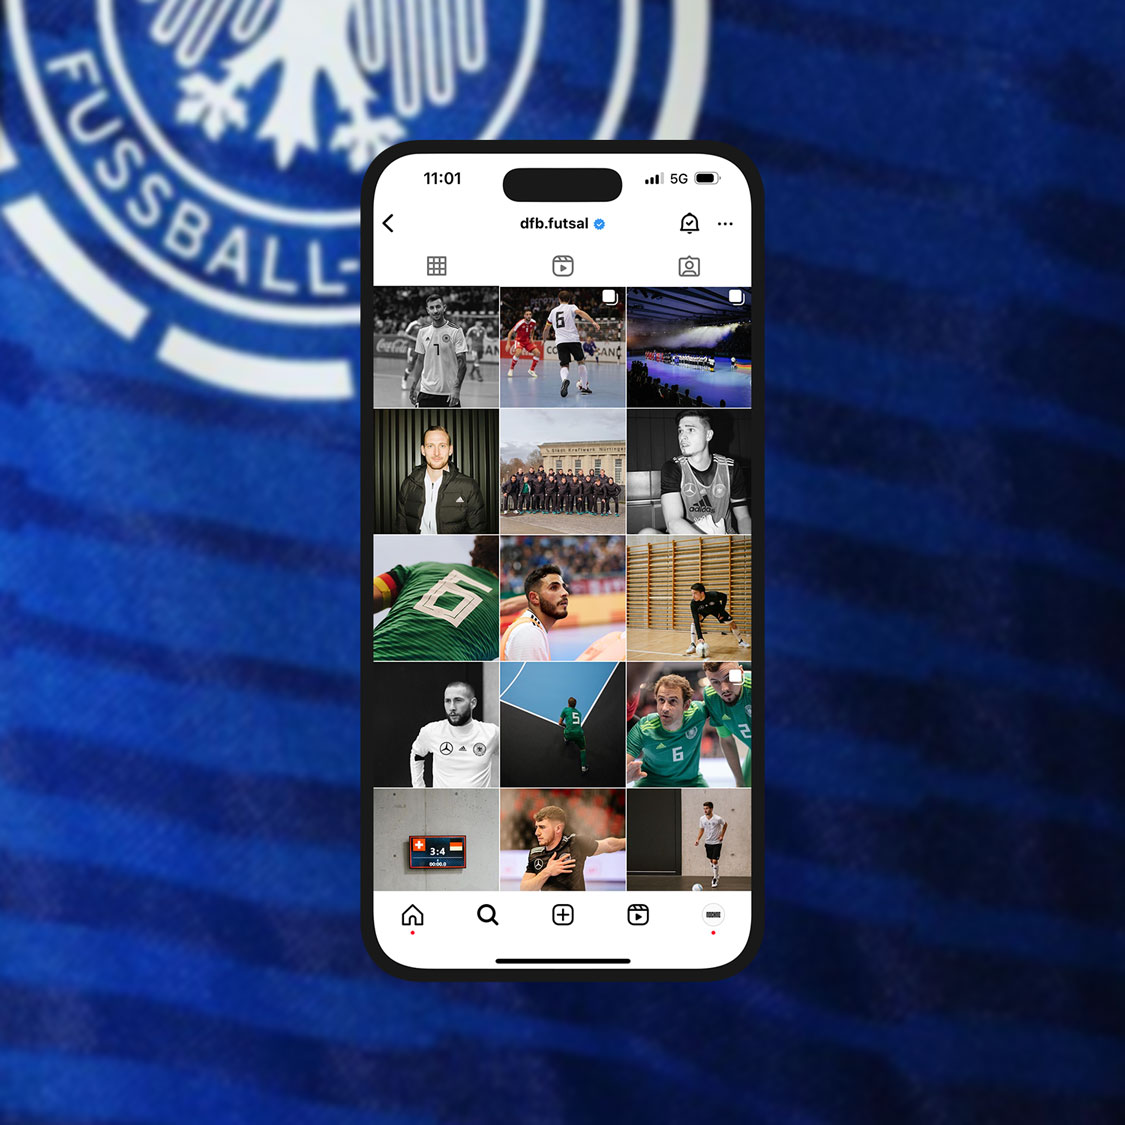 Für die Futsal-Nationalmannschaft des DFB hat NOCHNE.gmbh eine Social-Media-Strategie entworfen, die darauf abzielt, die Bekanntheit der Sportart zu steigern. Der Ansatz umfasst eine persönliche Darstellung der Spieler, die über die üblichen sportlichen Inhalte hinausgeht und die Fans durch ungewöhnliche Einblicke in den Profialltag anzieht, um eine engere Verbindung zum Team herzustellen. Die Umsetzung wurde ebenfalls durch die Produktion des Bildmaterials / Content Creation von NOCHNE.gmbh gemacht.